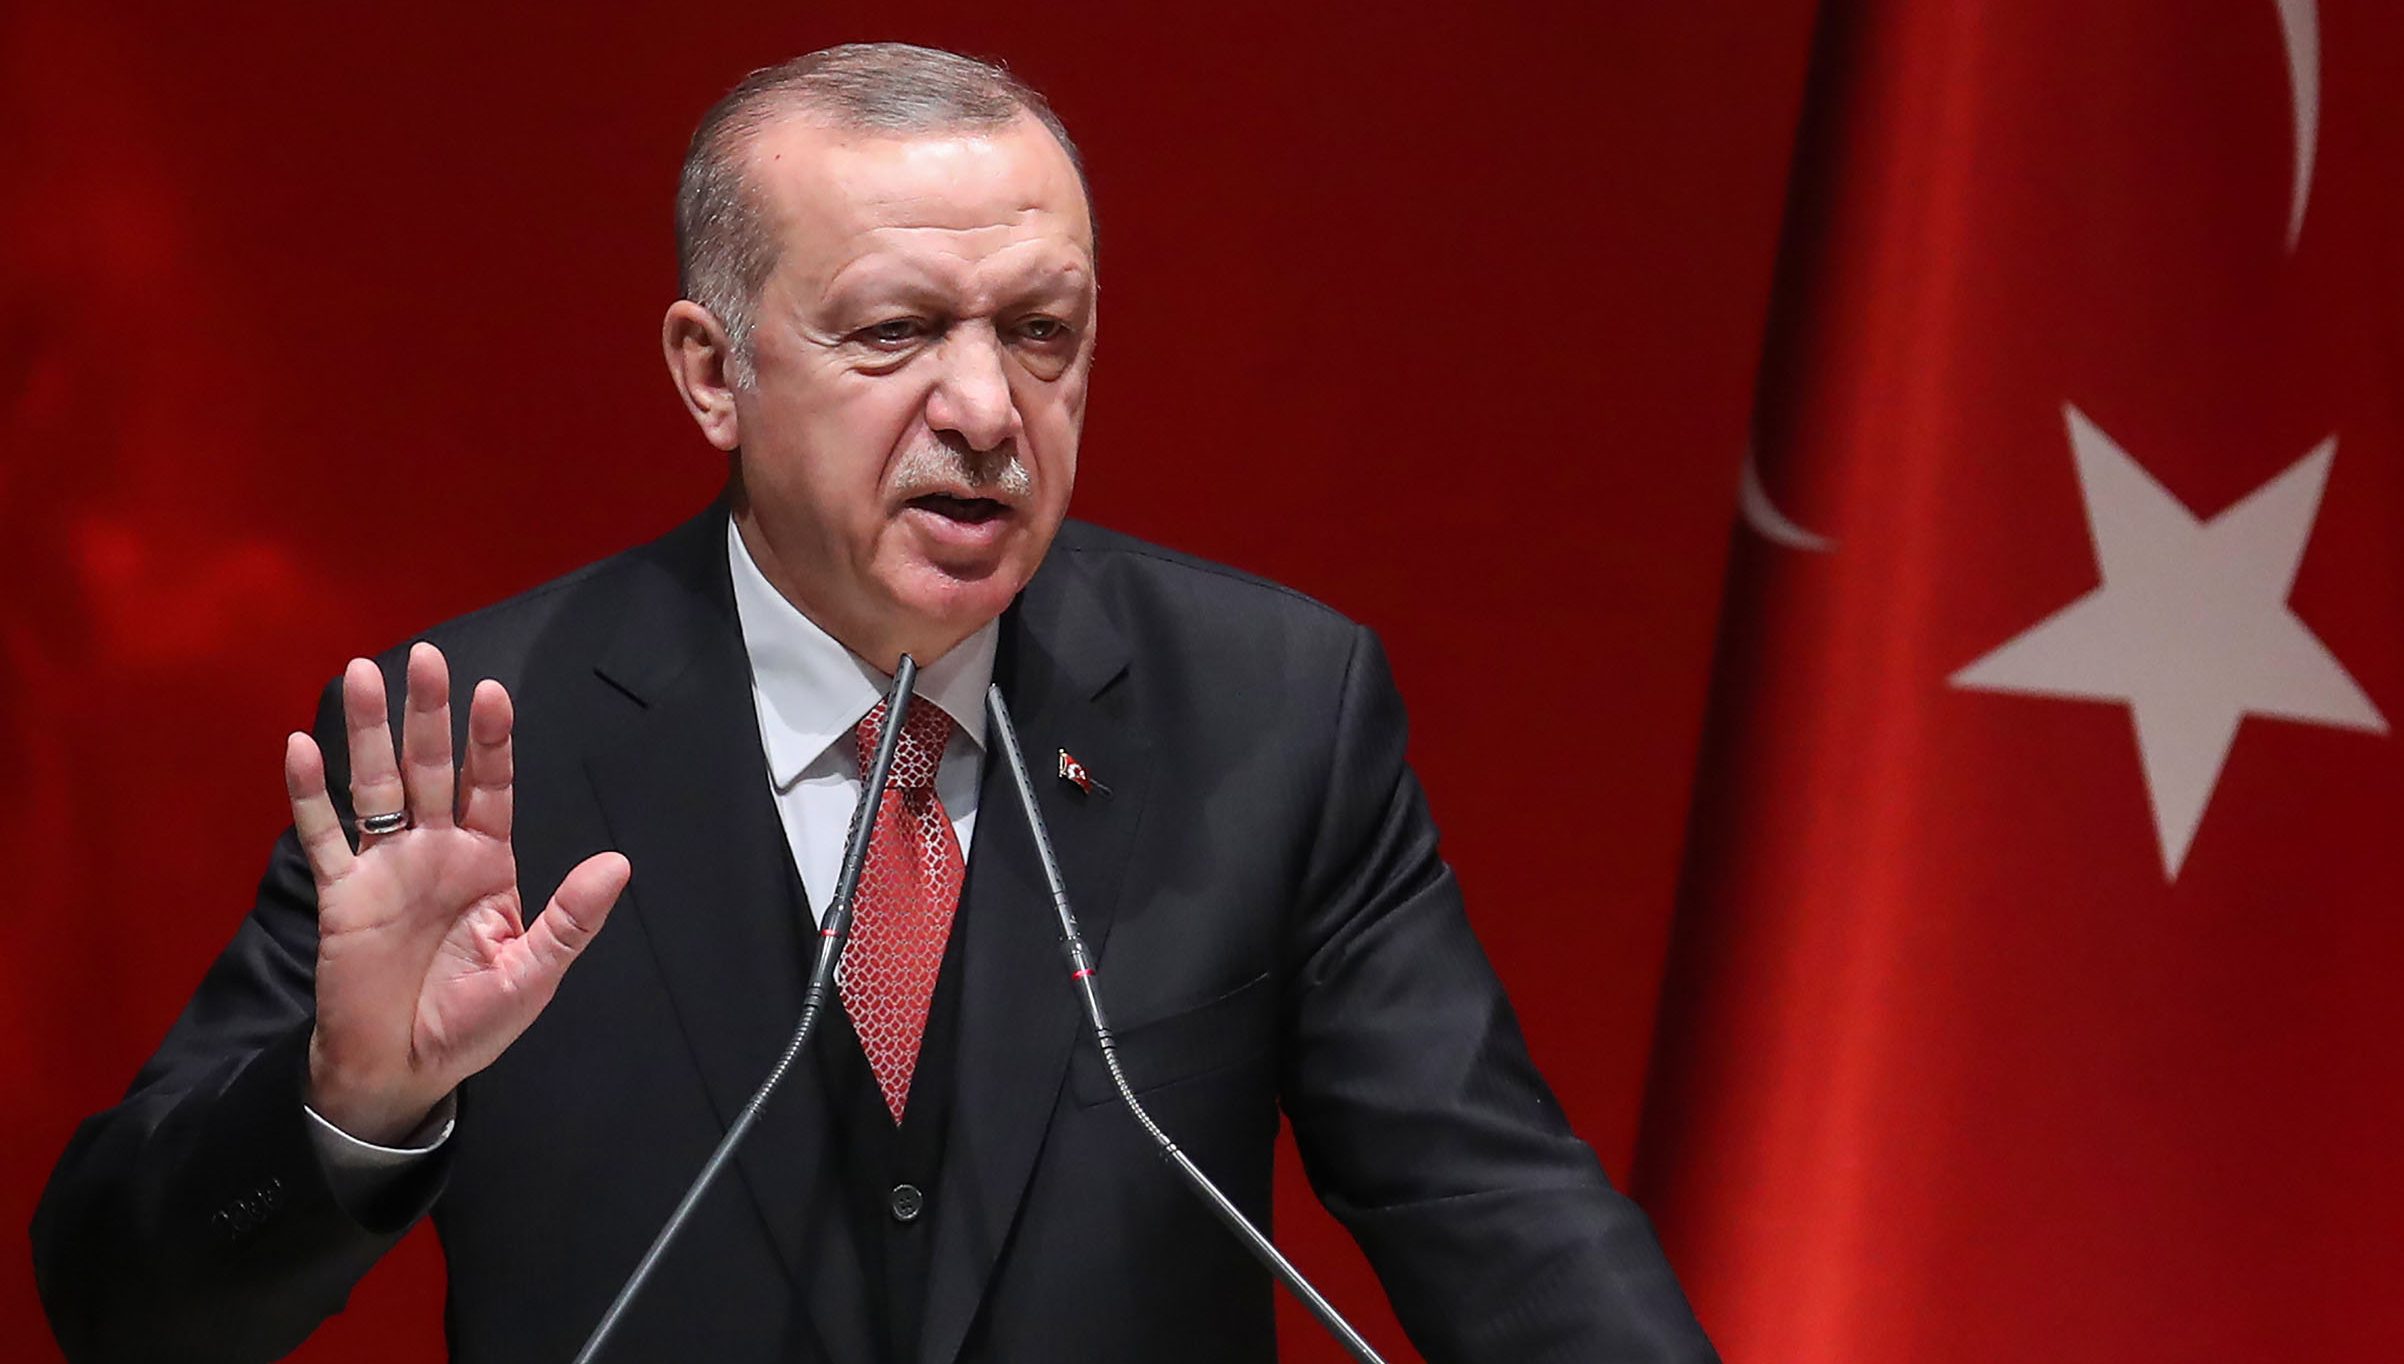 Турецкая полиция расследует пересуды о здоровье президента Эрдогана в соцсетях  